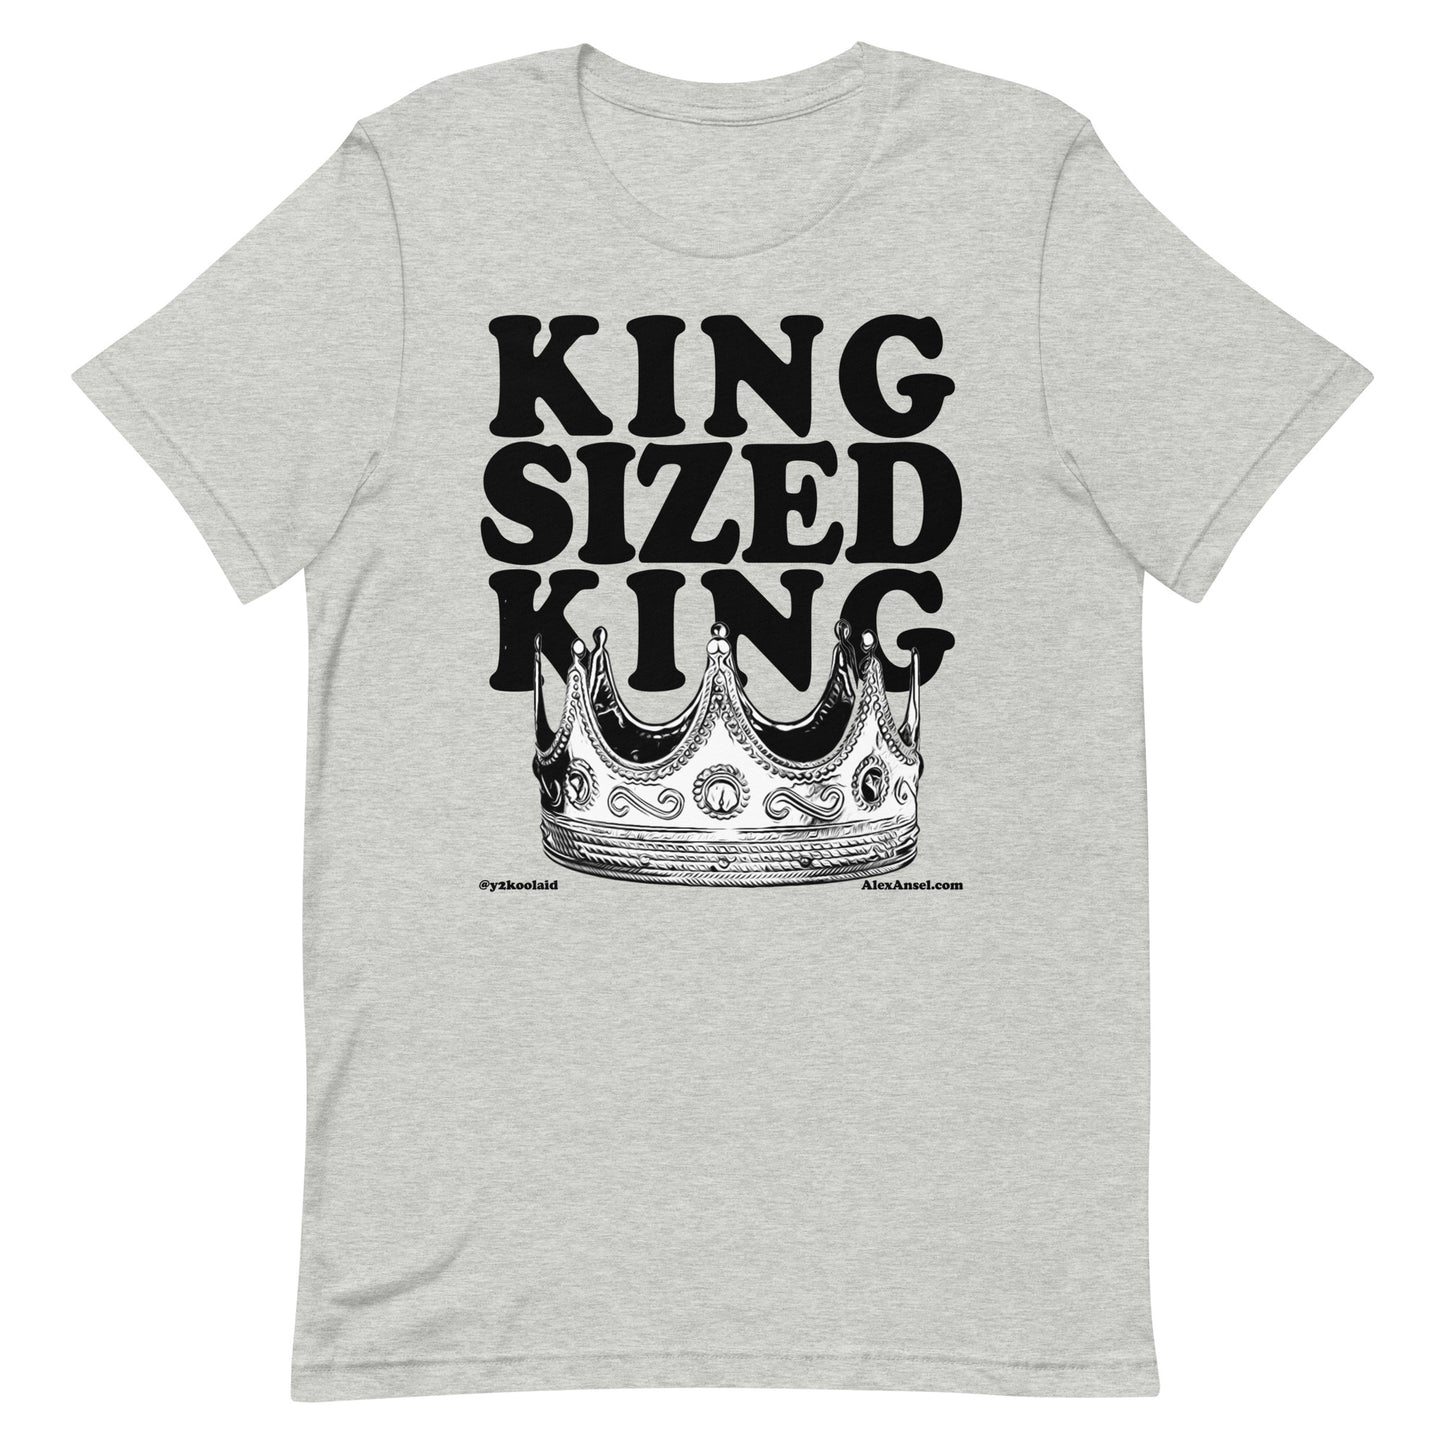 KING SIZED KING (b)